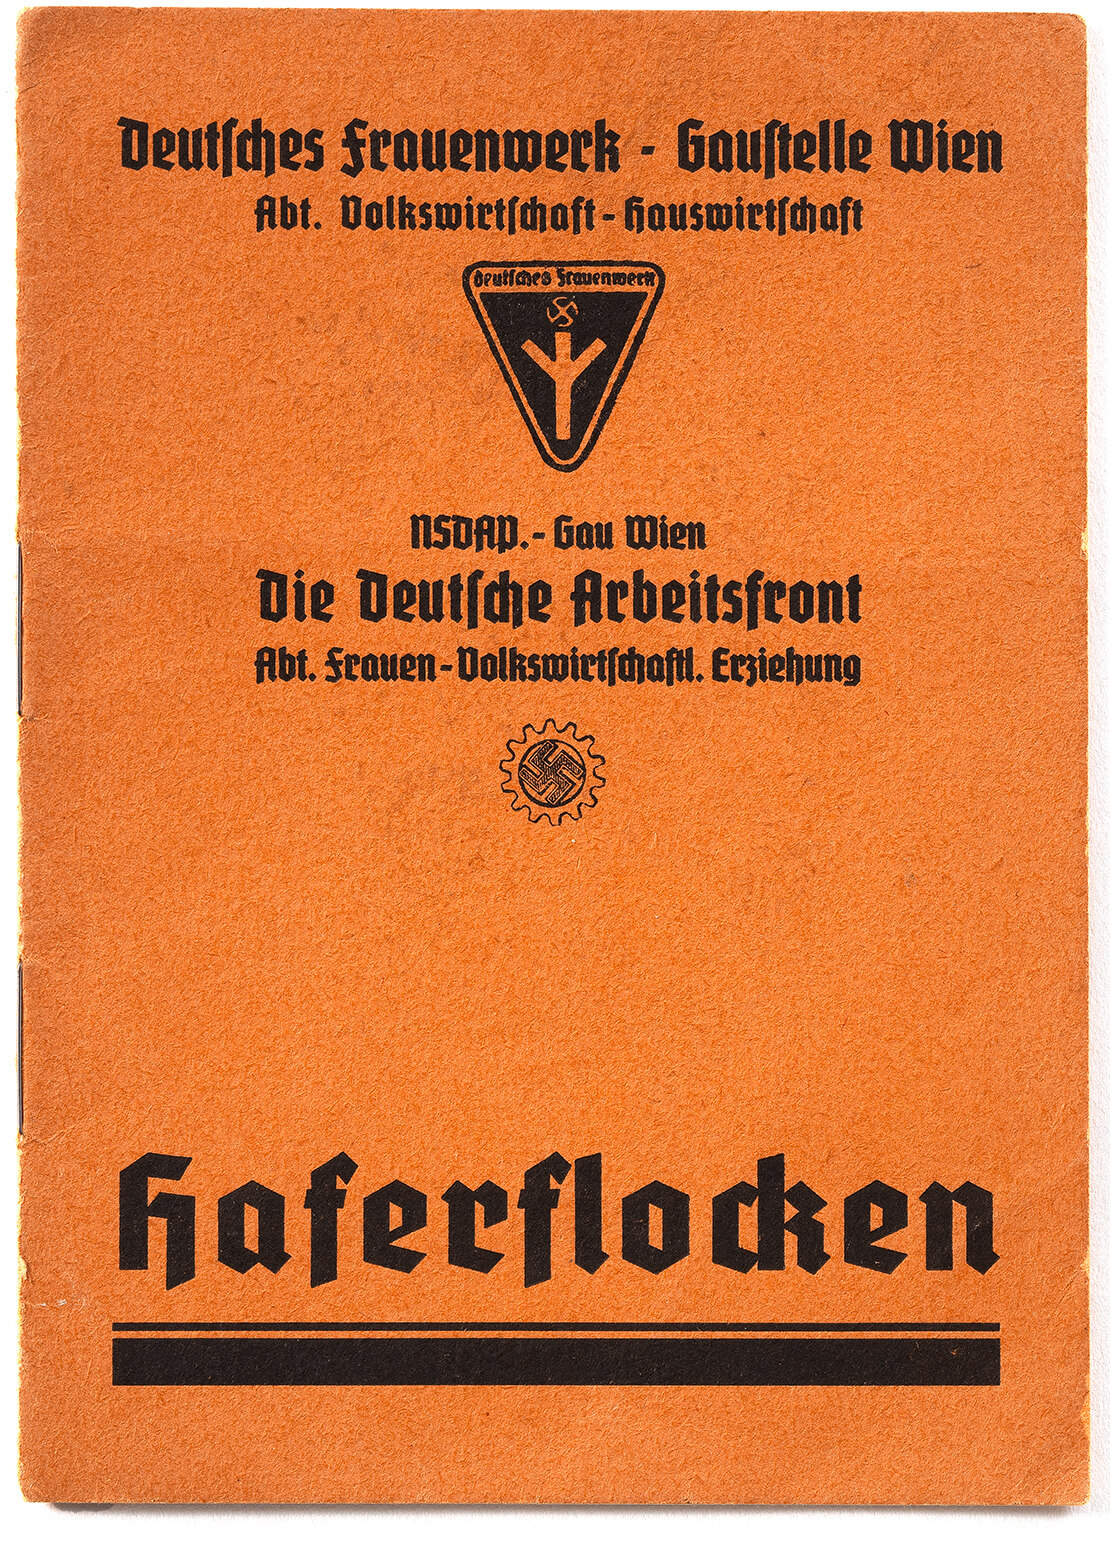 Broschüre des Deutschen Frauenwerks, Gaustelle Wien, um 1940, Wien Museum 